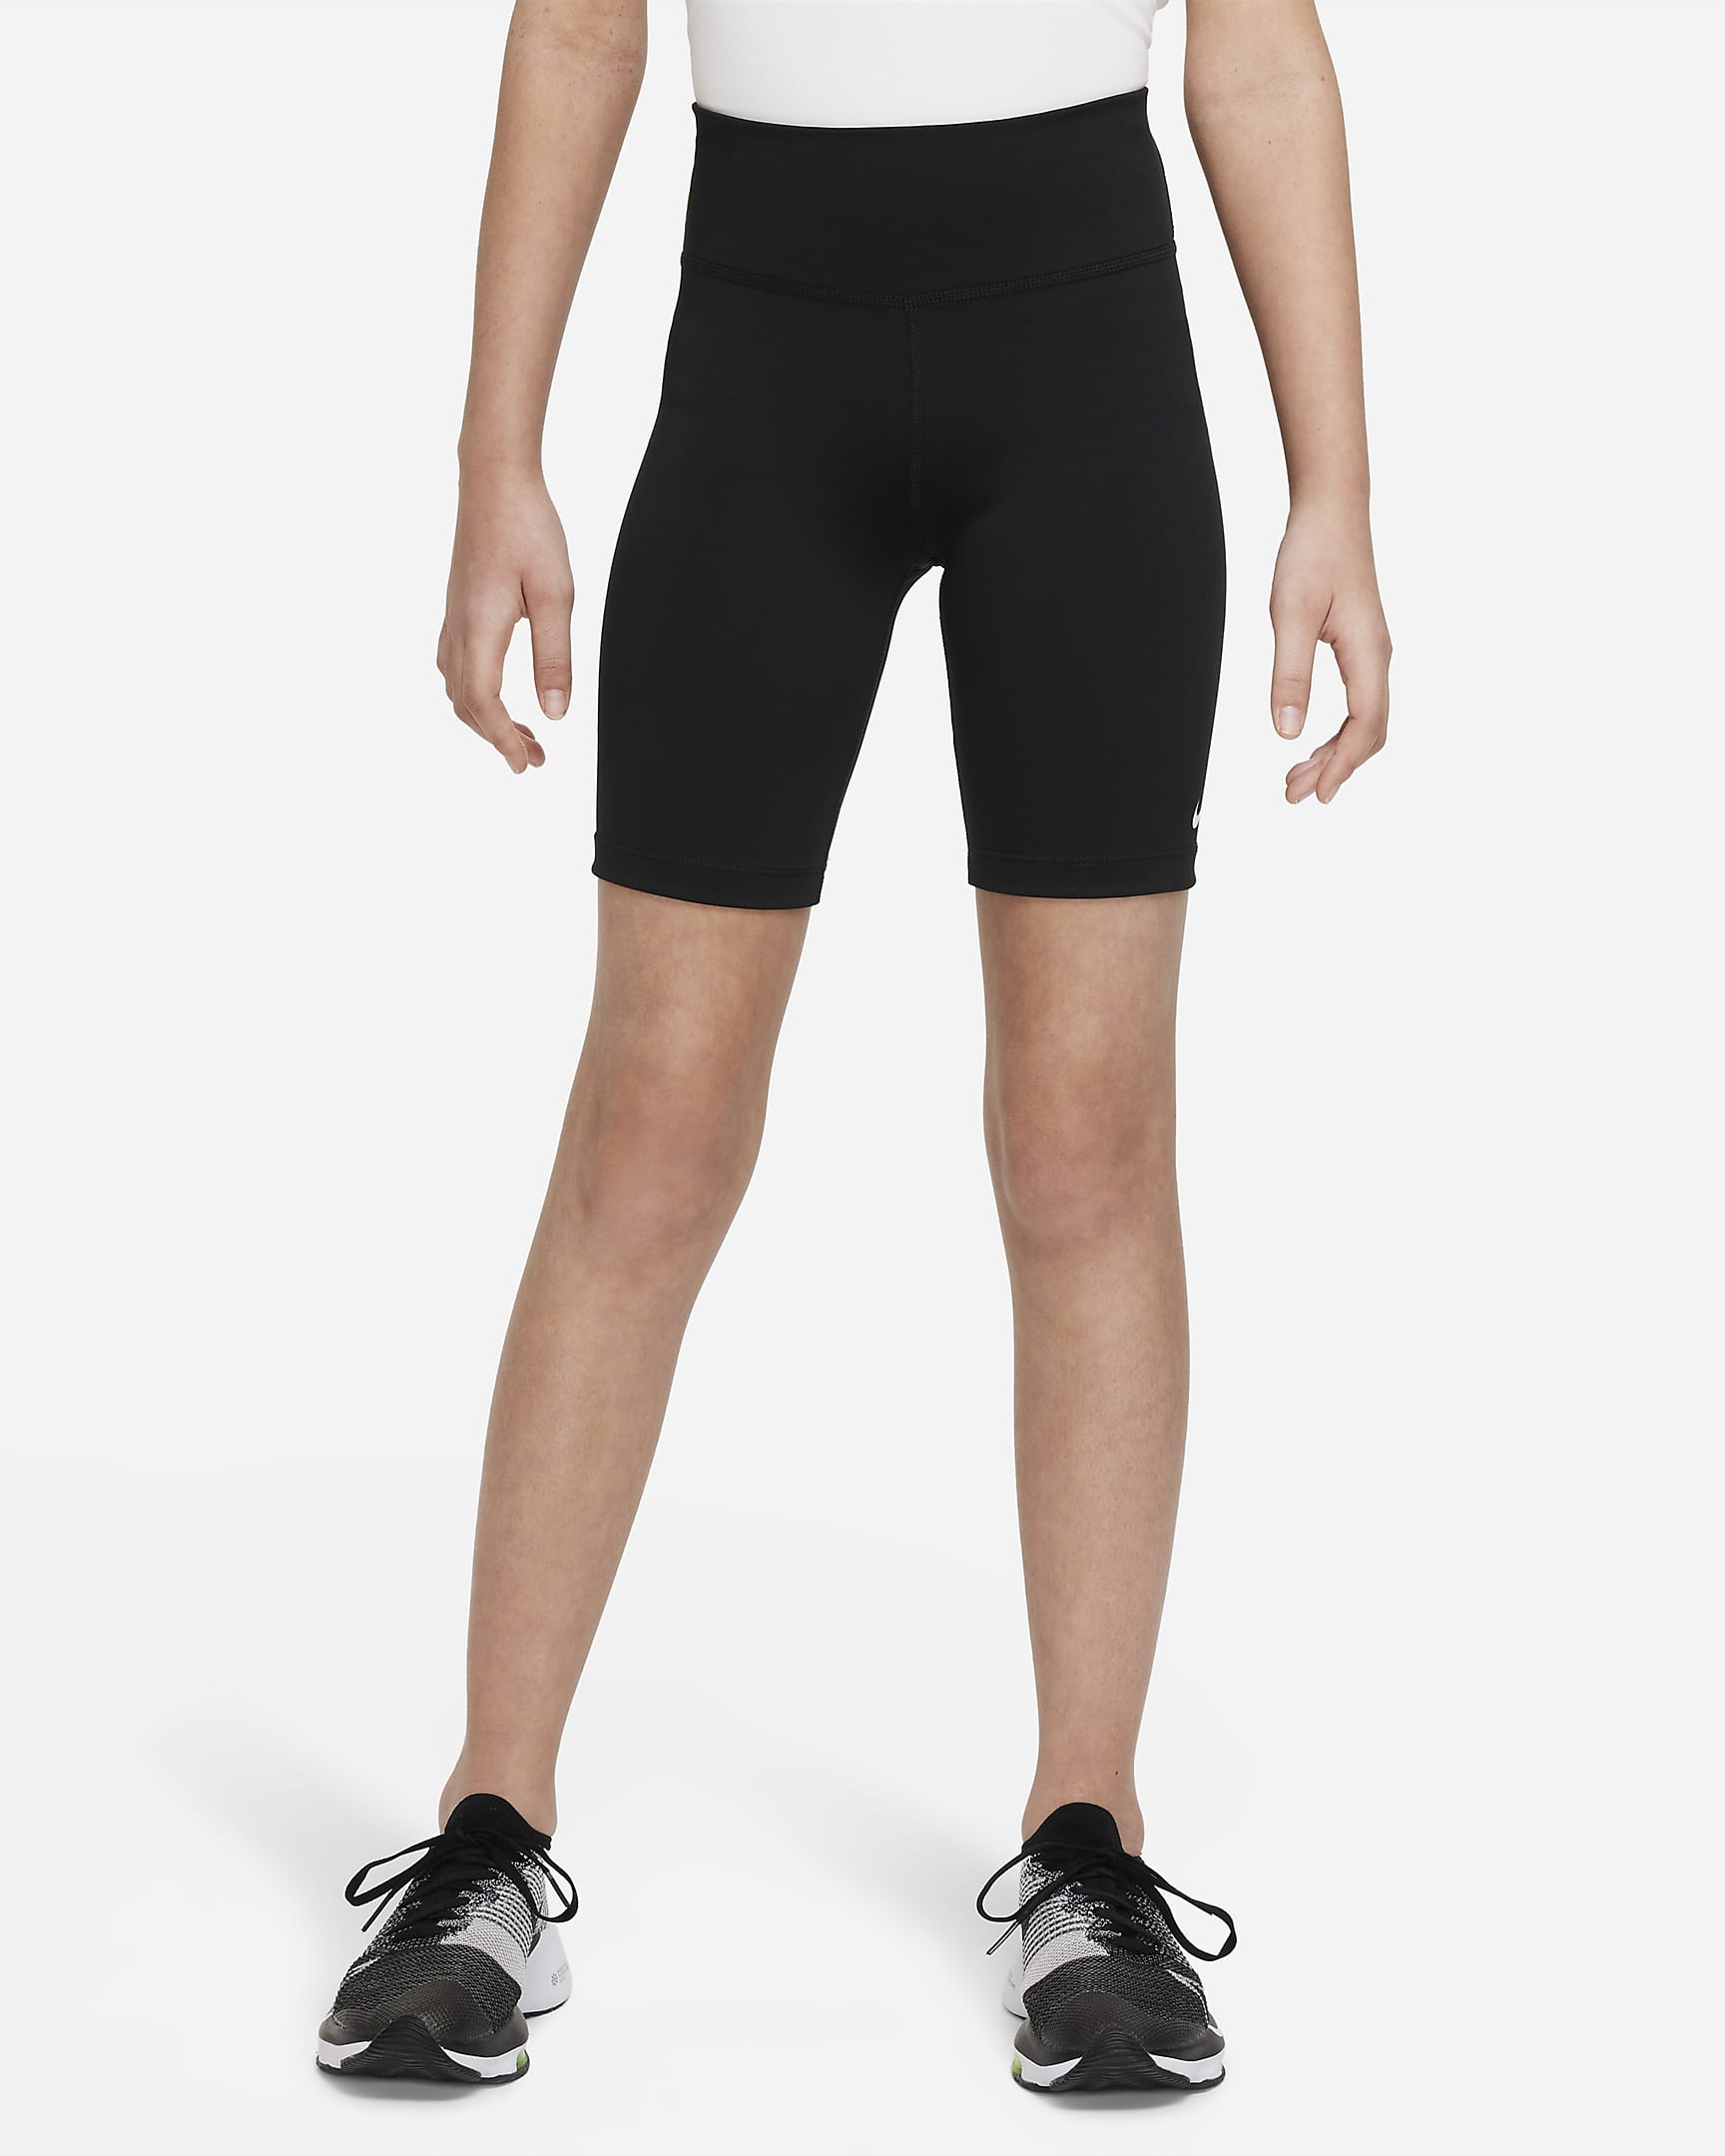 Nike One Bike Shorts (Mädchen) - Schwarz/Weiß